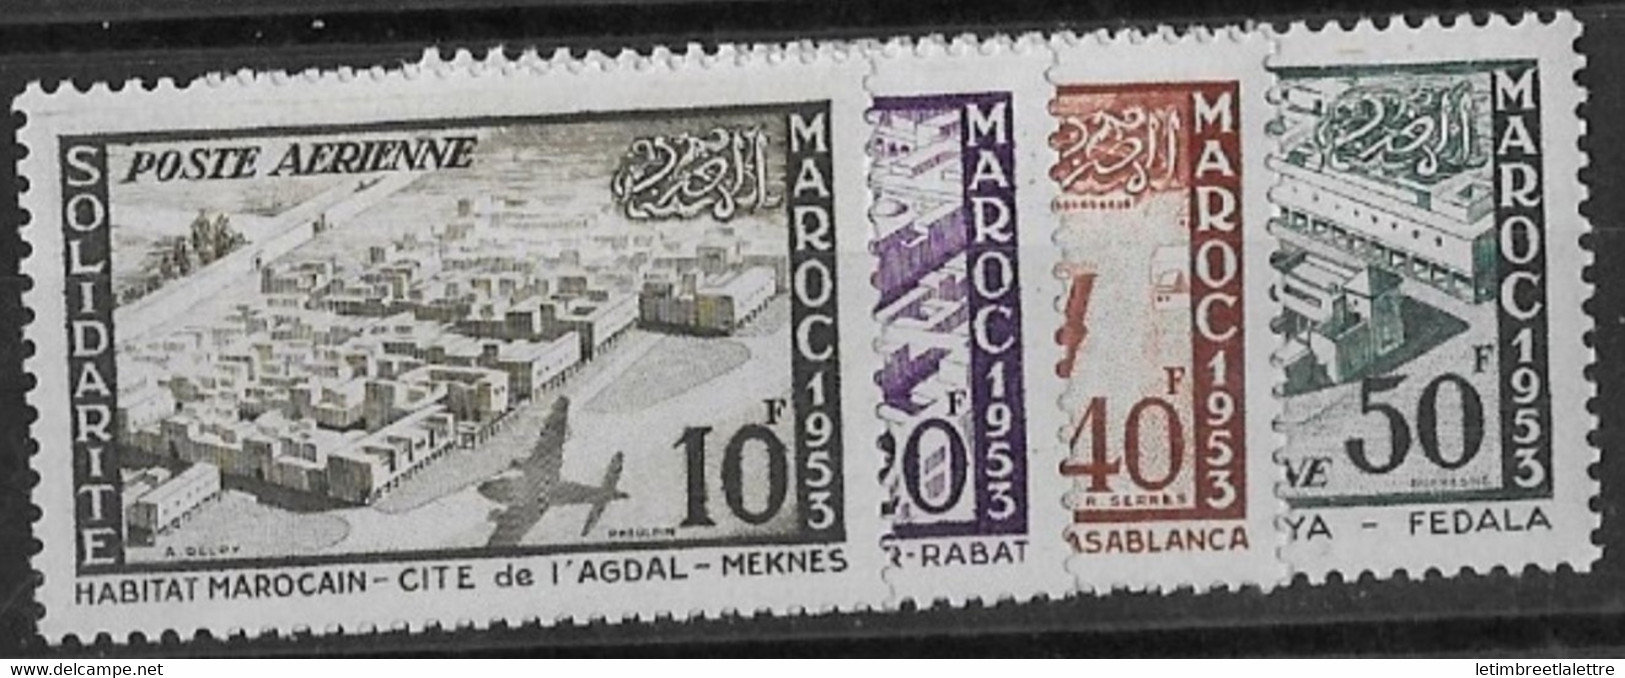 ⭐ Maroc - Poste Aérienne - YT N° 94 à 97 ** - Neuf Sans Charnière - 1954 ⭐ - Poste Aérienne